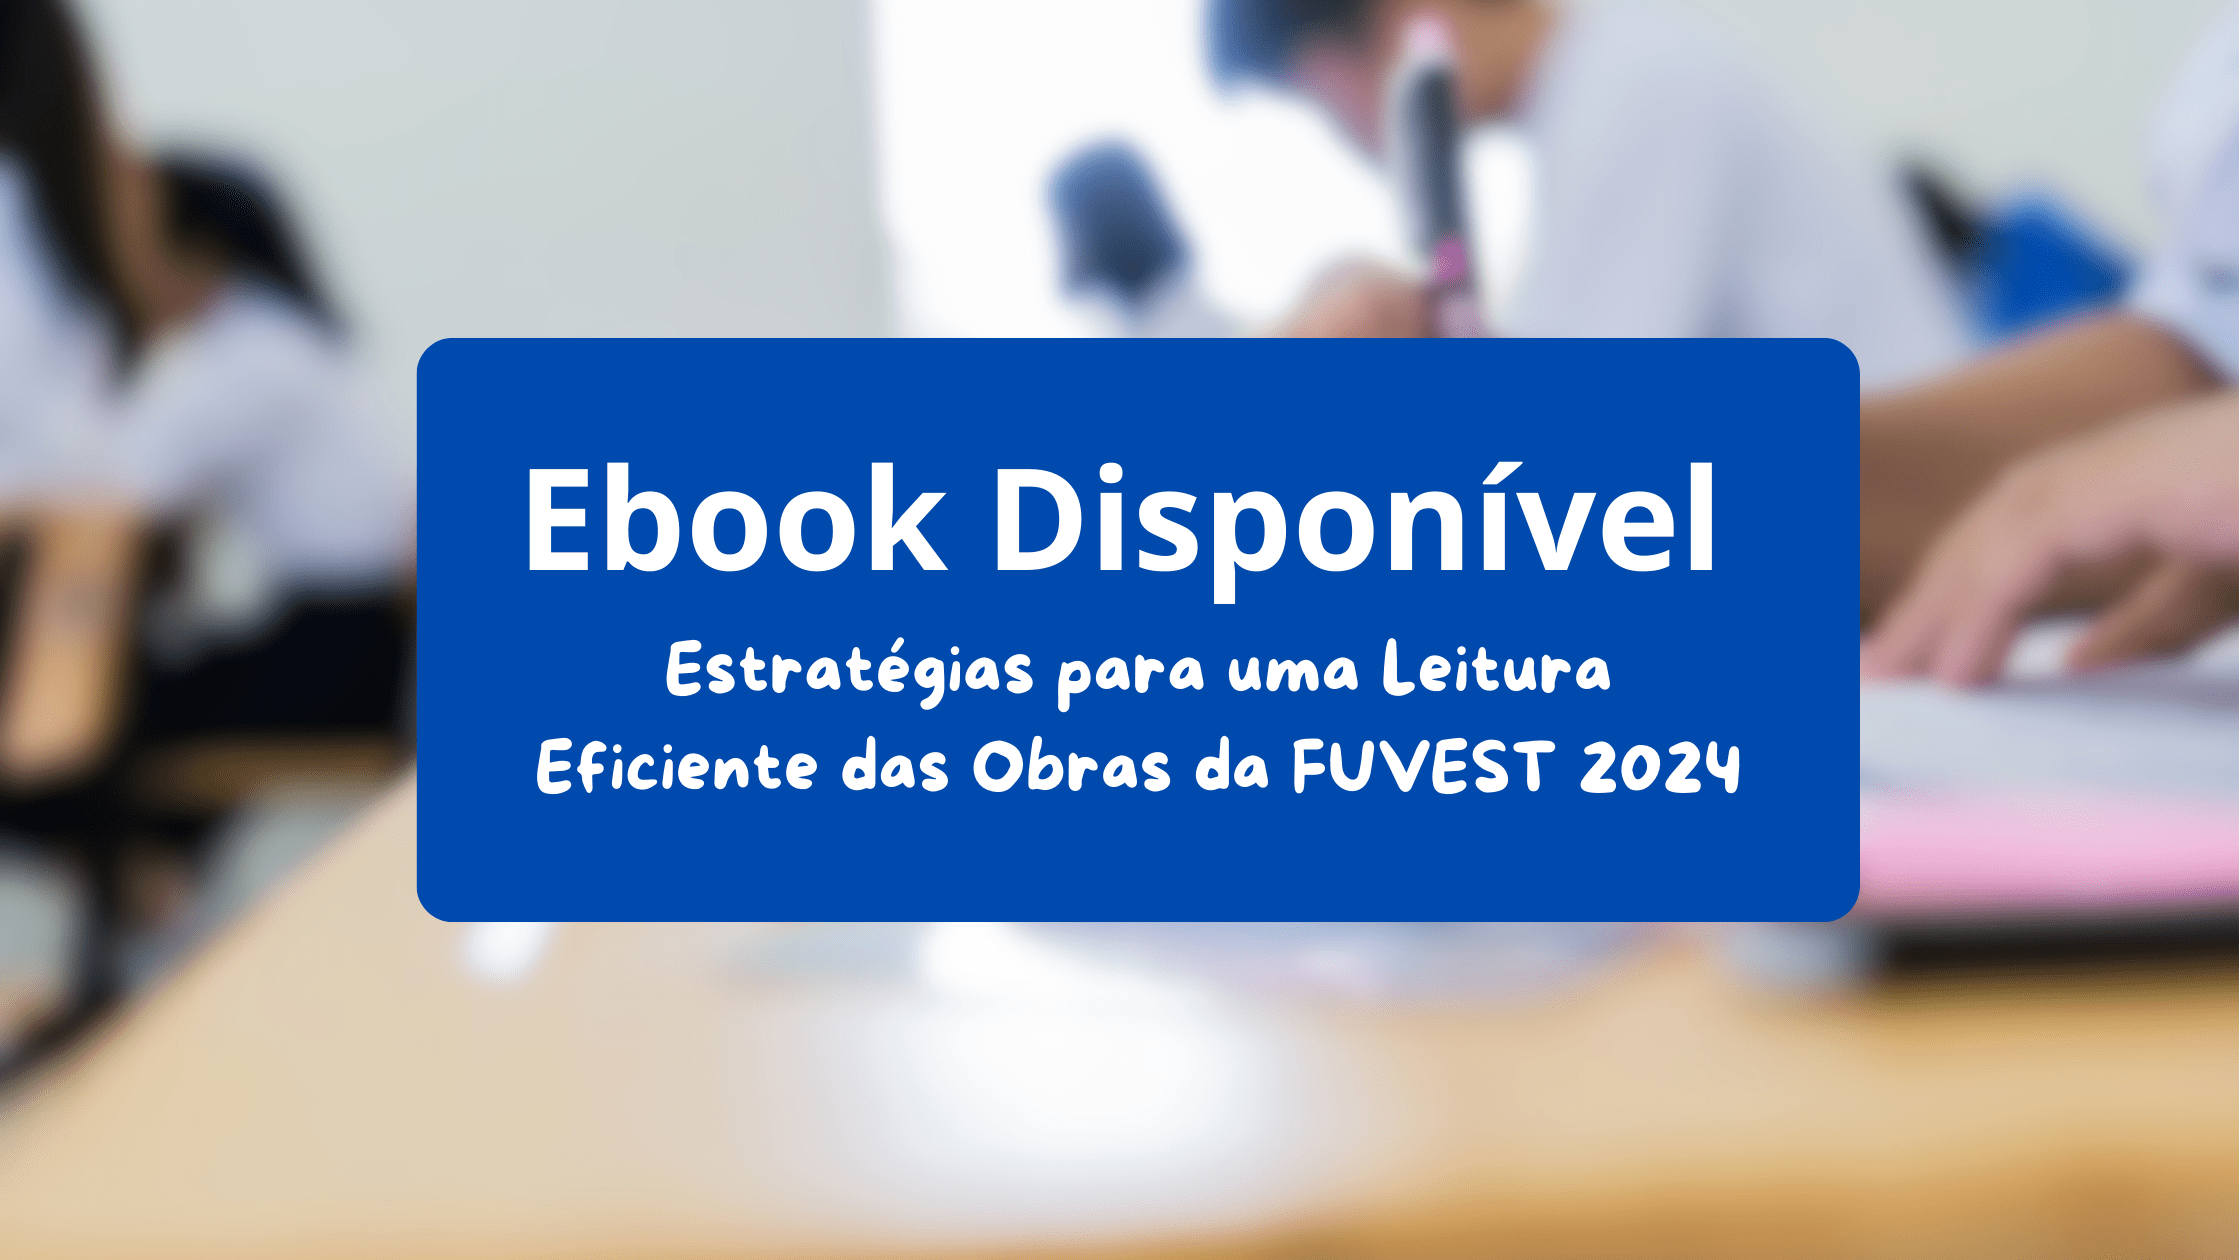 Ebook “Estratégias para uma Leitura Eficiente das Obras da FUVEST 2024” está liberado